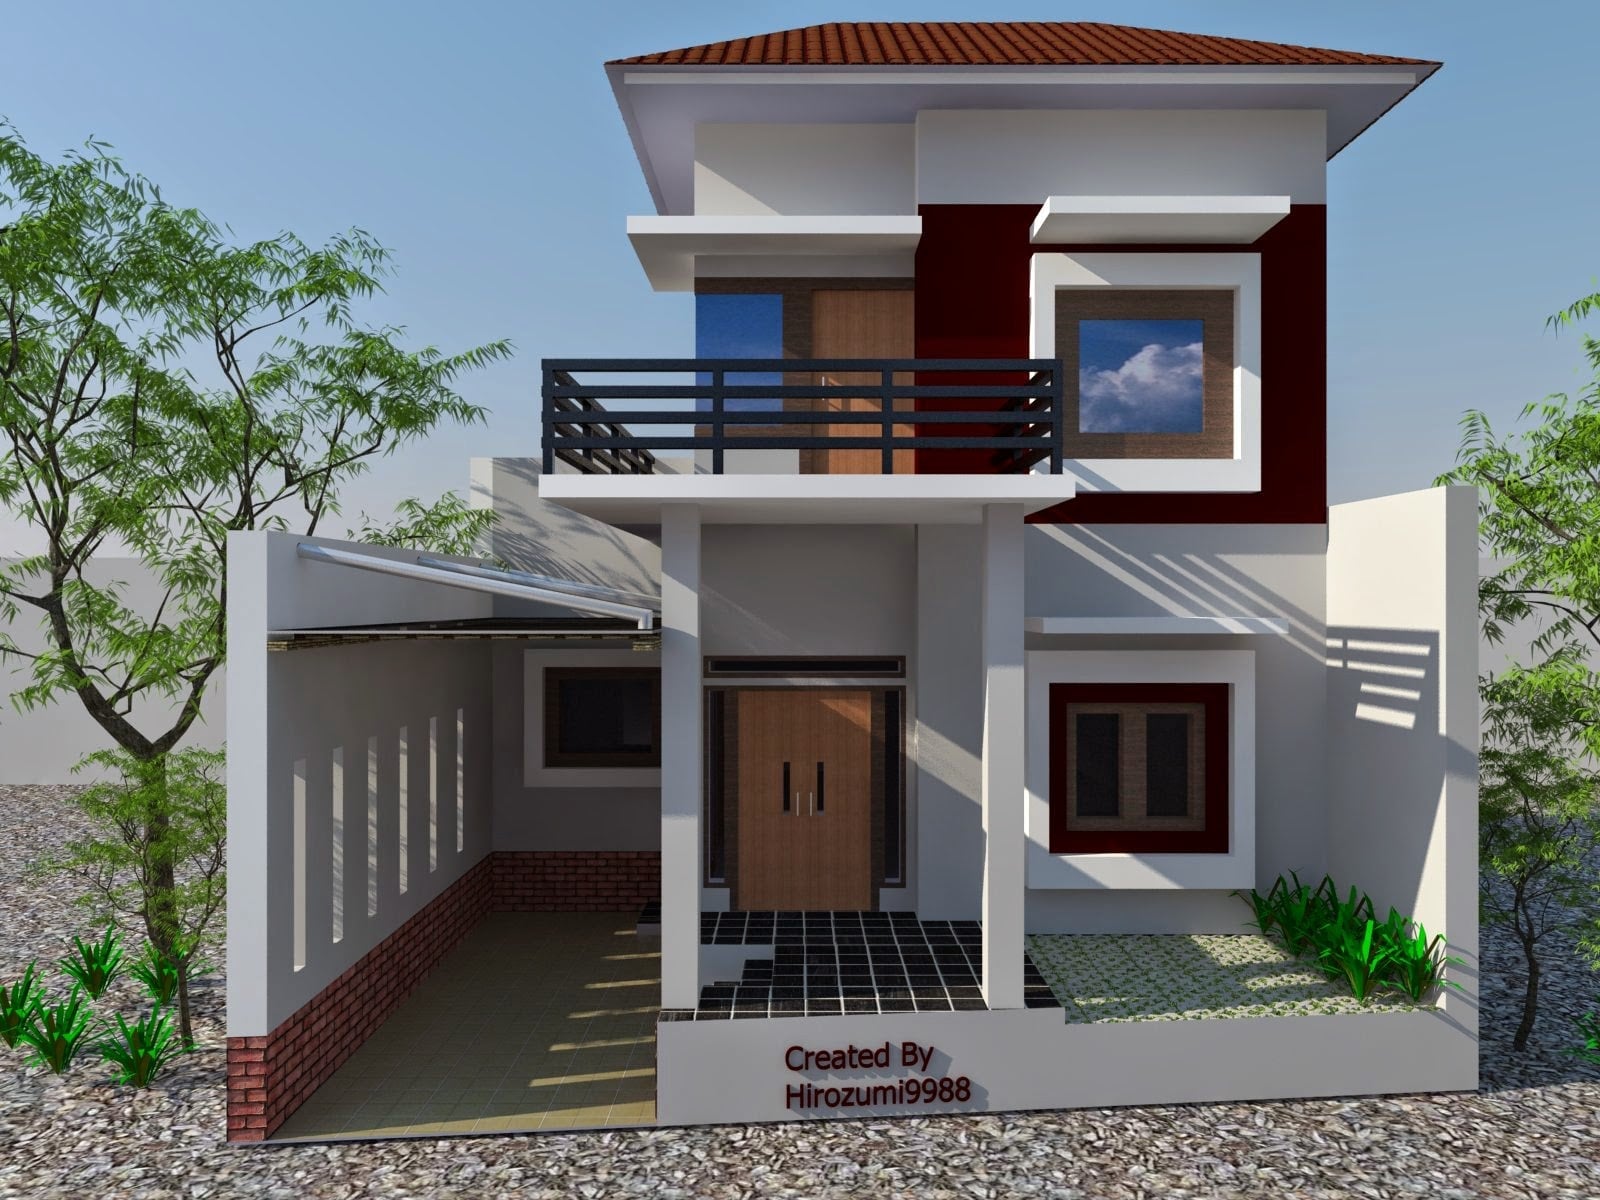 Kreatif Desain Rumah Sederhana Minimalis 2 Lantai 46 Untuk Ide Merancang Interior Rumah dengan Desain Rumah Sederhana Minimalis 2 Lantai